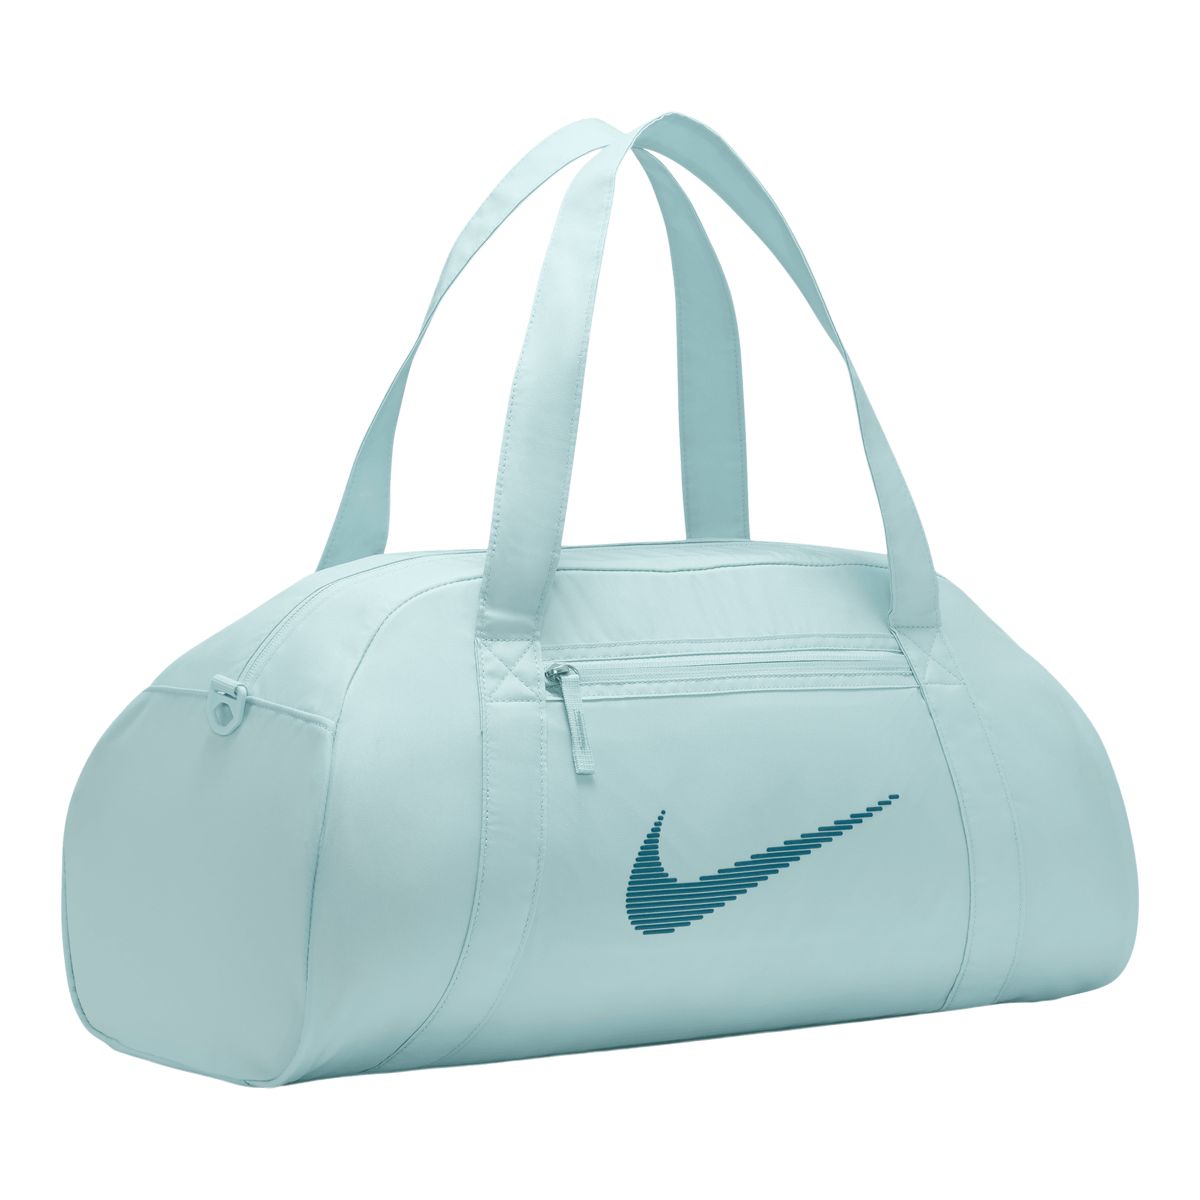 Nike Woman's Gym Club Duffle Bag